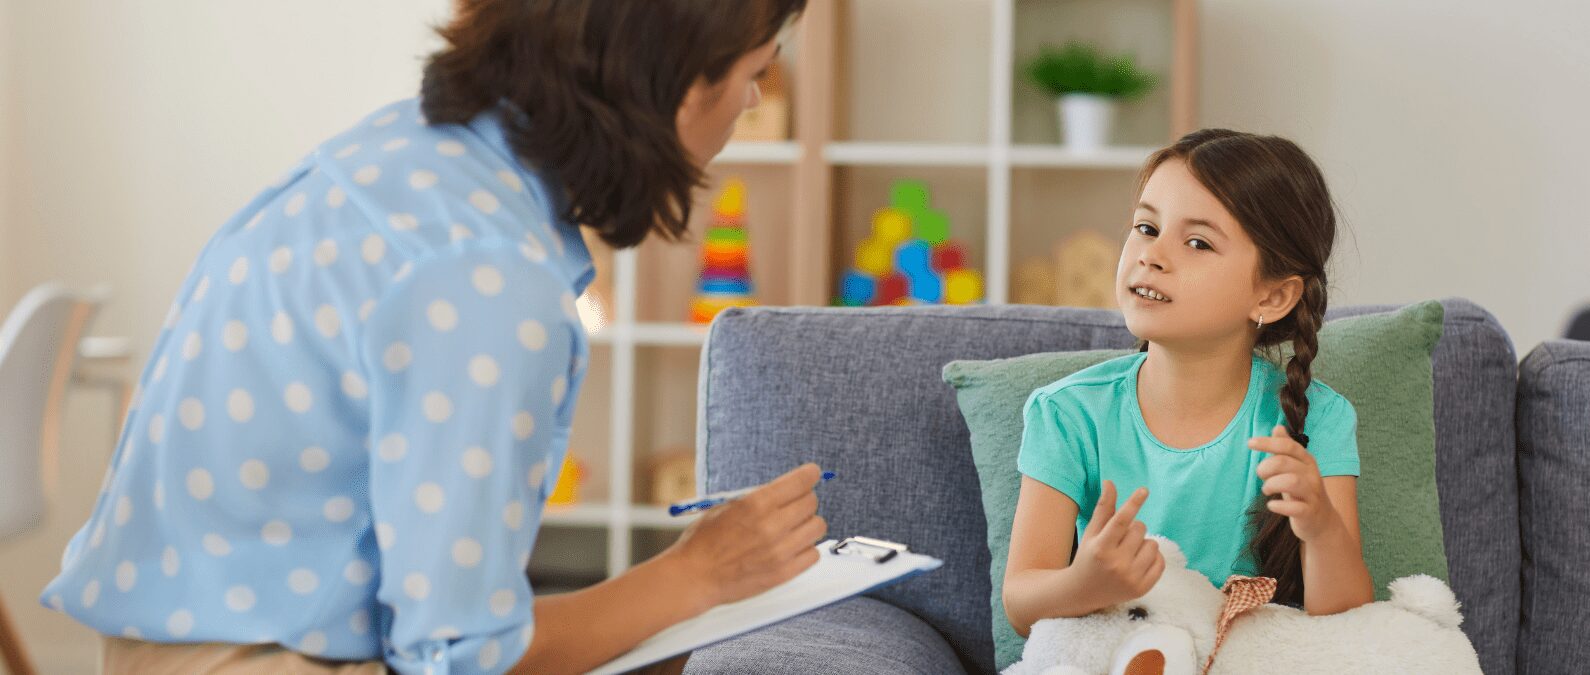 dépistage du TDAH chez l'enfant avec un professionnel de la santé, médecin ou psychologue